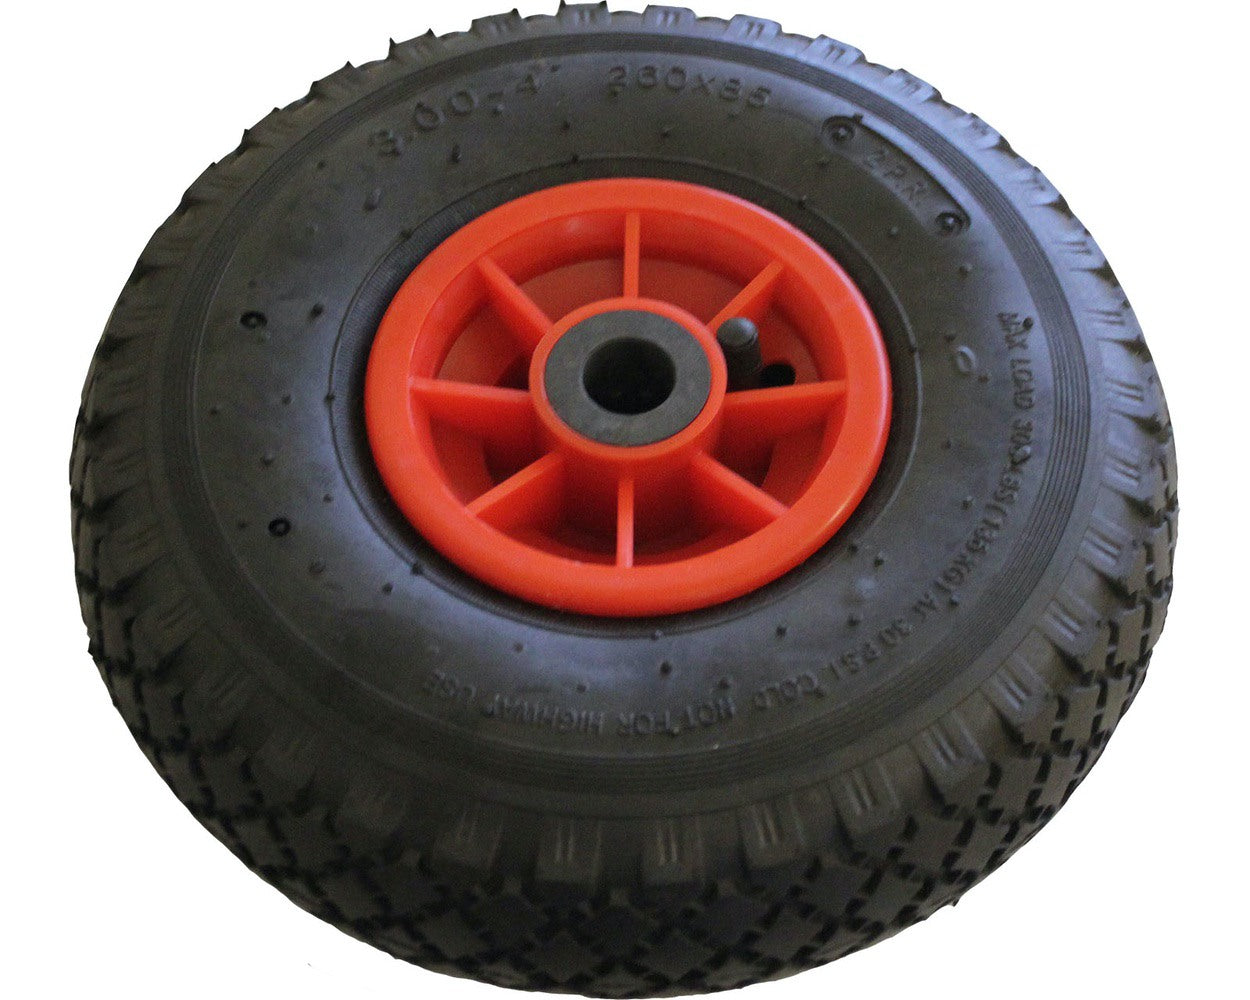 10" Wheel 3.00-4 (260 x 85) Pneumatic Trolley Wheel 20mm Bore